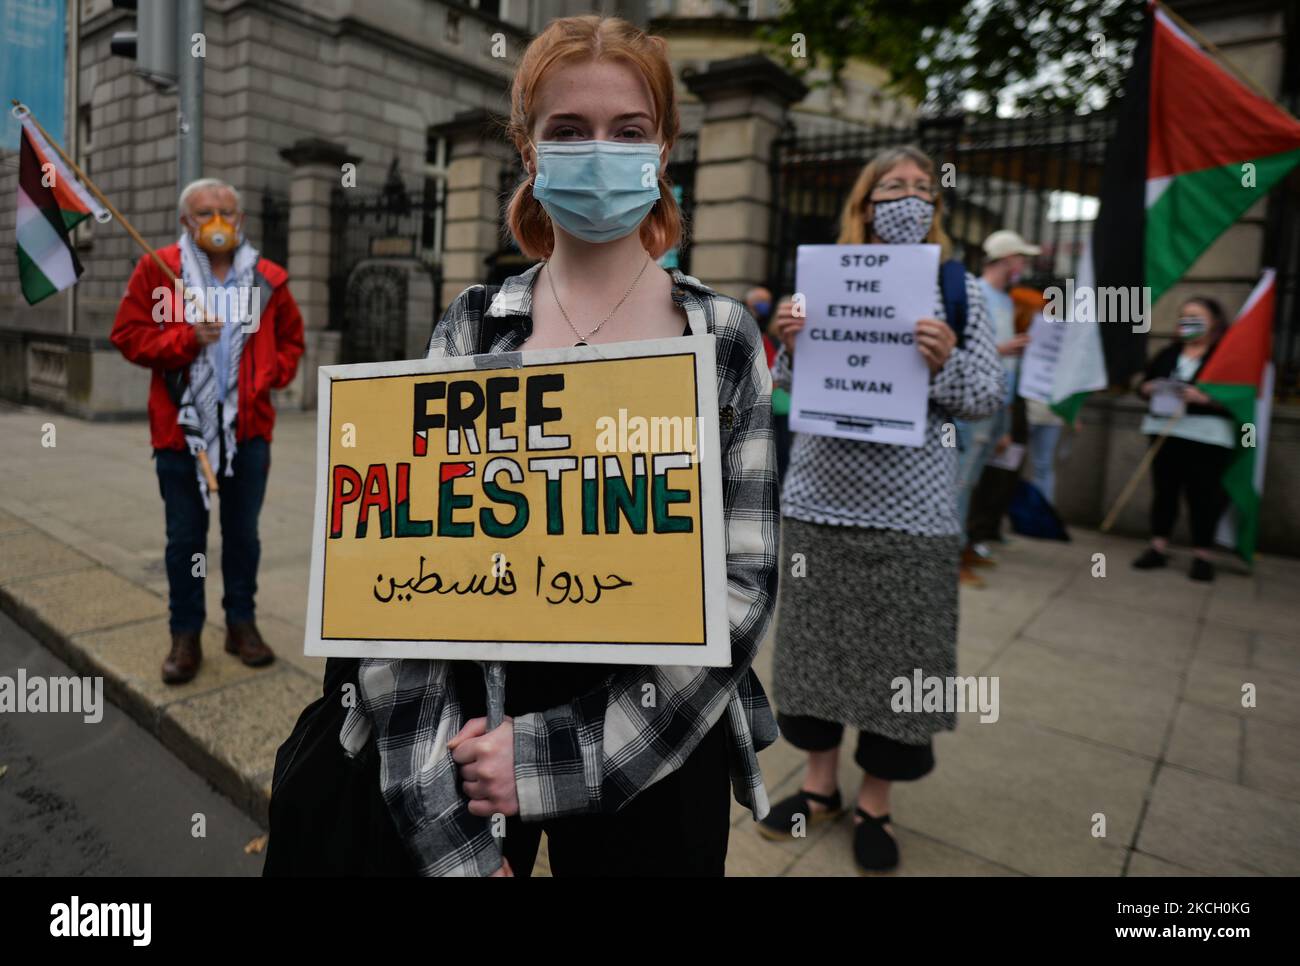 Pro-palästinensische Demonstranten, die während der irisch-palästinensischen Solidaritätskampagne „Stoppt jetzt die ethnische Säuberung von Silwan“ vor dem Leinster House in Dublin gesehen wurden. Am Mittwoch, den 07. Juli 2021, in Dublin, Irland. (Foto von Artur Widak/NurPhoto) Stockfoto